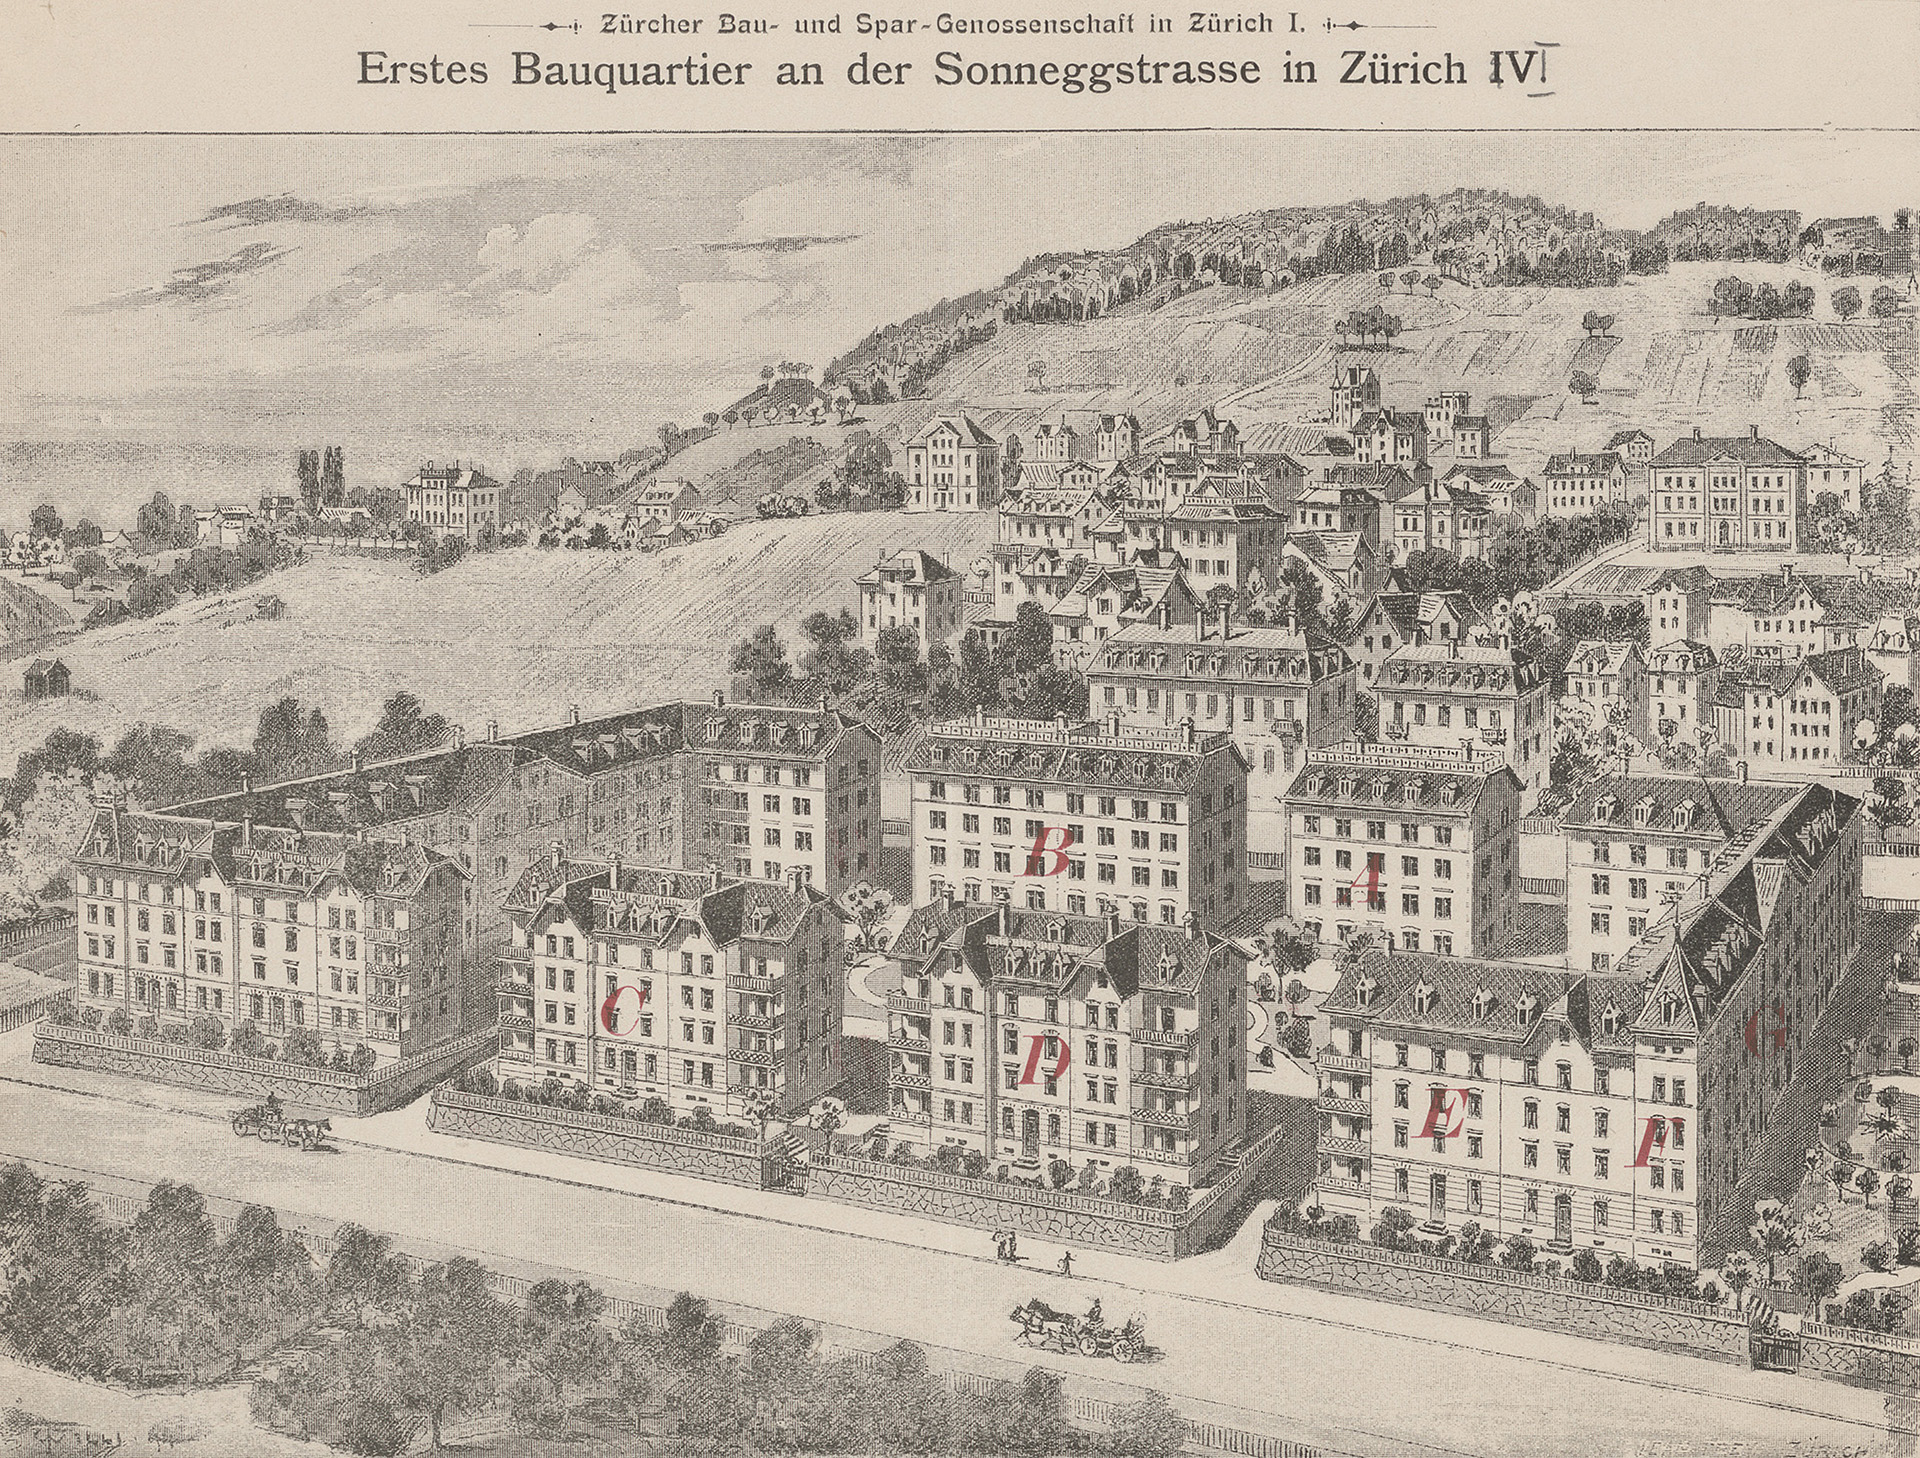 Das erste Bauquartier der Zürcher Bau- und Spar-Genossenschaft an der Sonneggstrasse in Zürich, errichtet 1893–1897. (Bild: ZB Zürich)